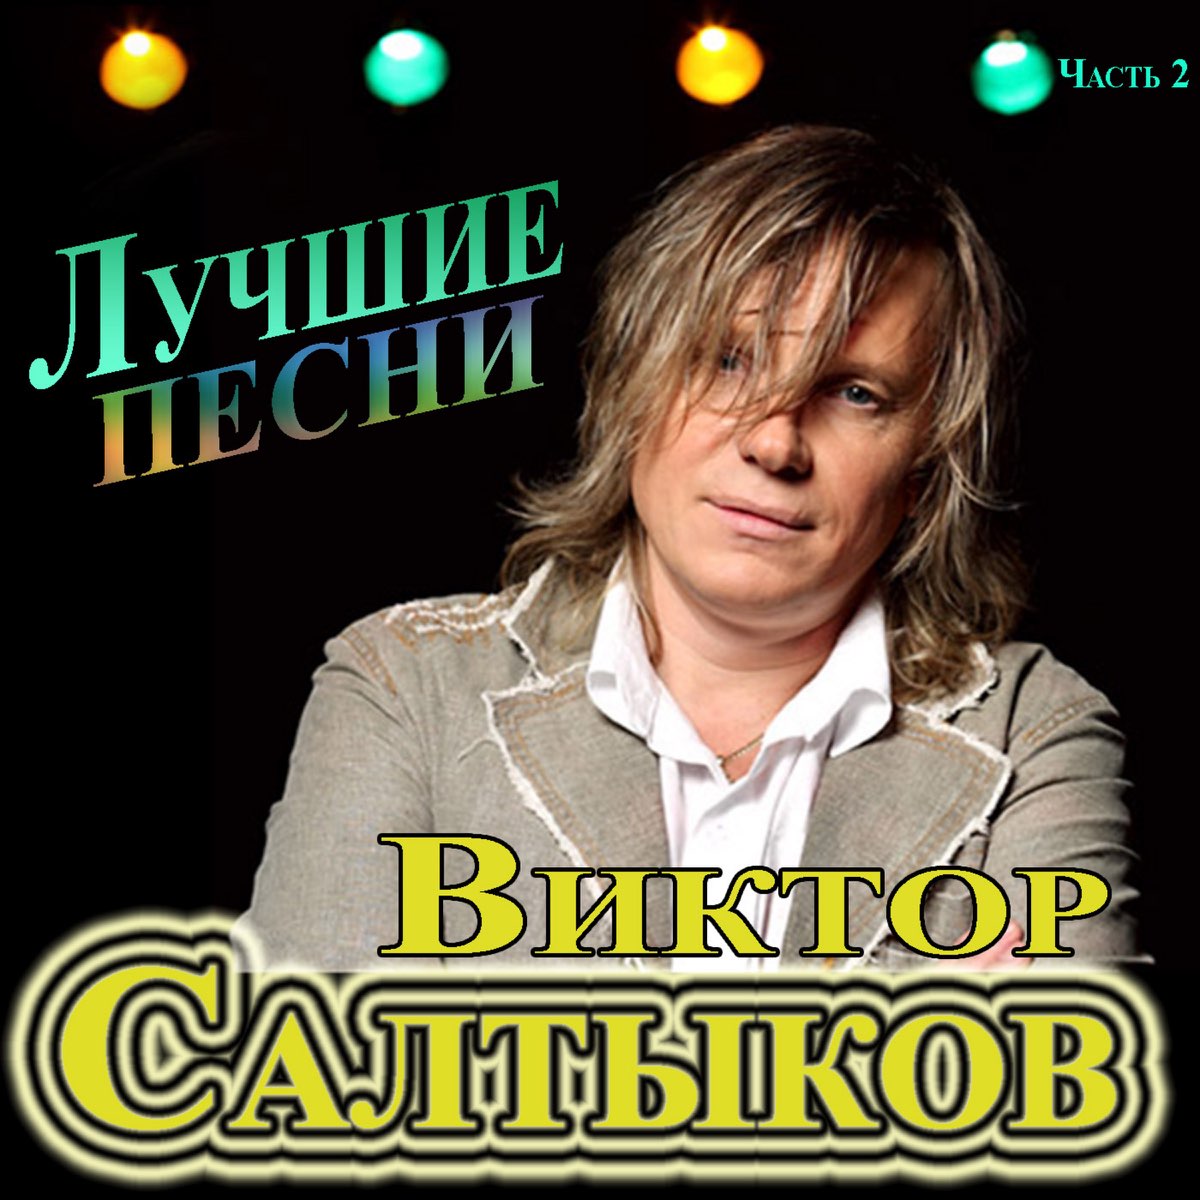 Слушать лучшие песни виктора салтыкова